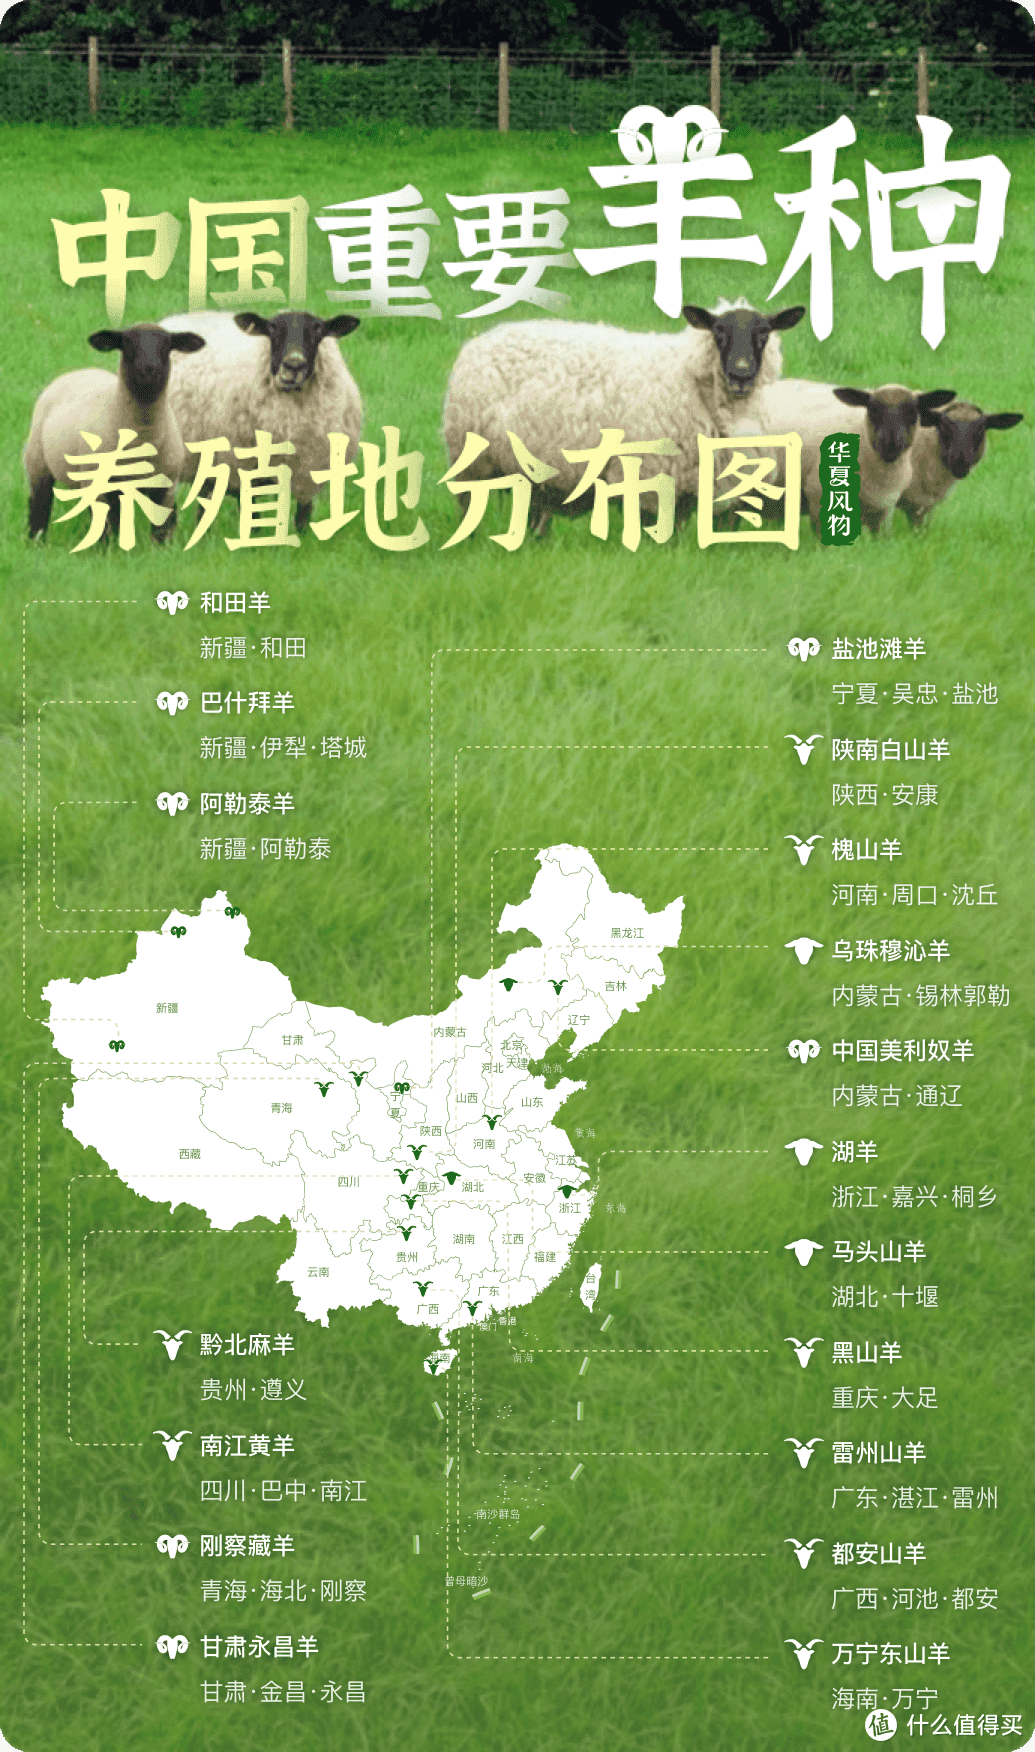 中国重要羊种养殖地分布图 08华夏风物